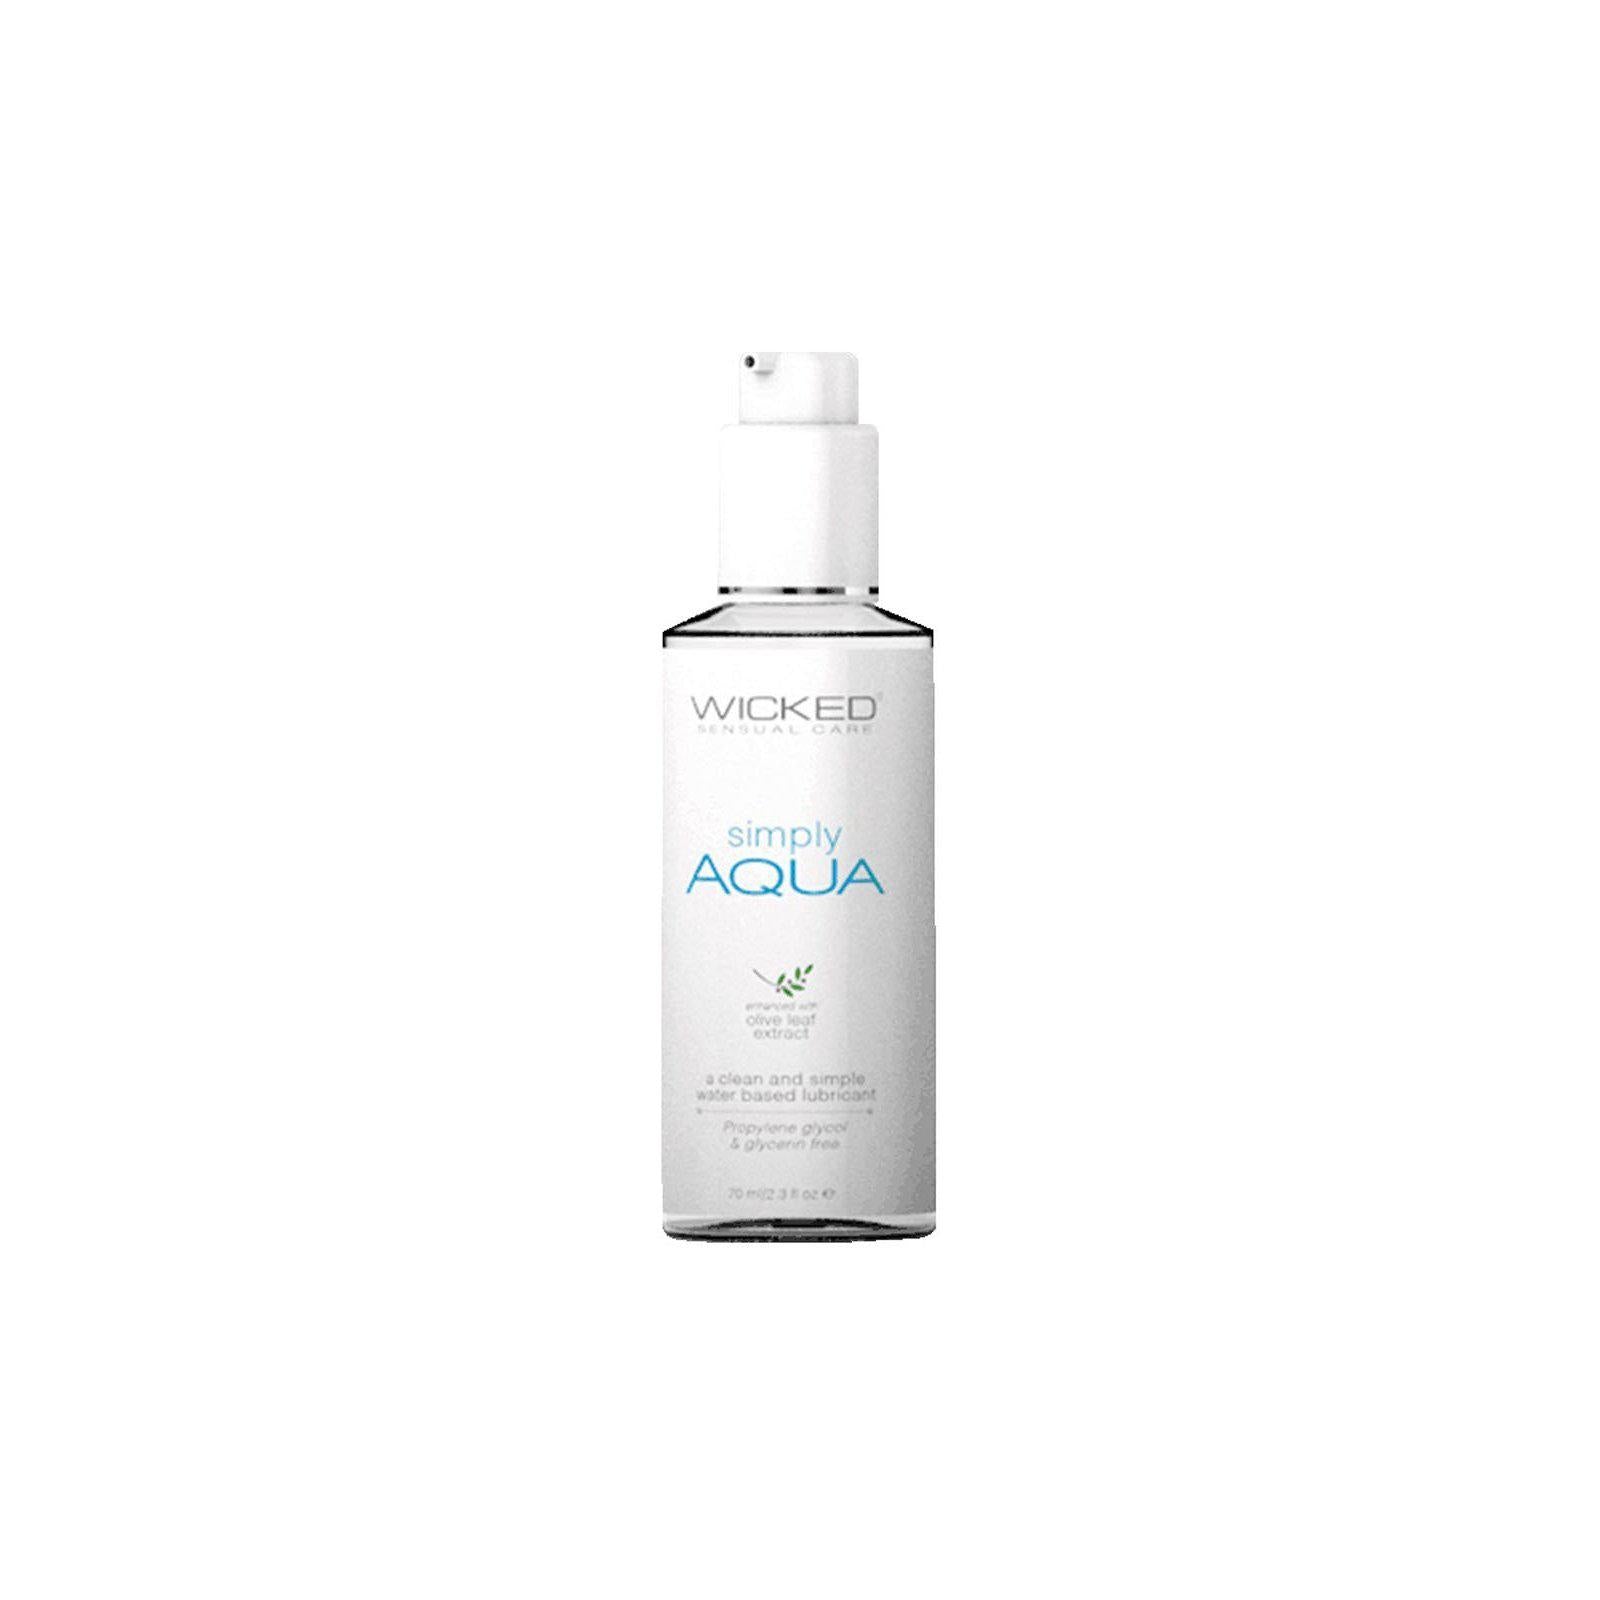 Simply Aqua Fragrance Free Lubricant - 2.3 Fl. Oz.